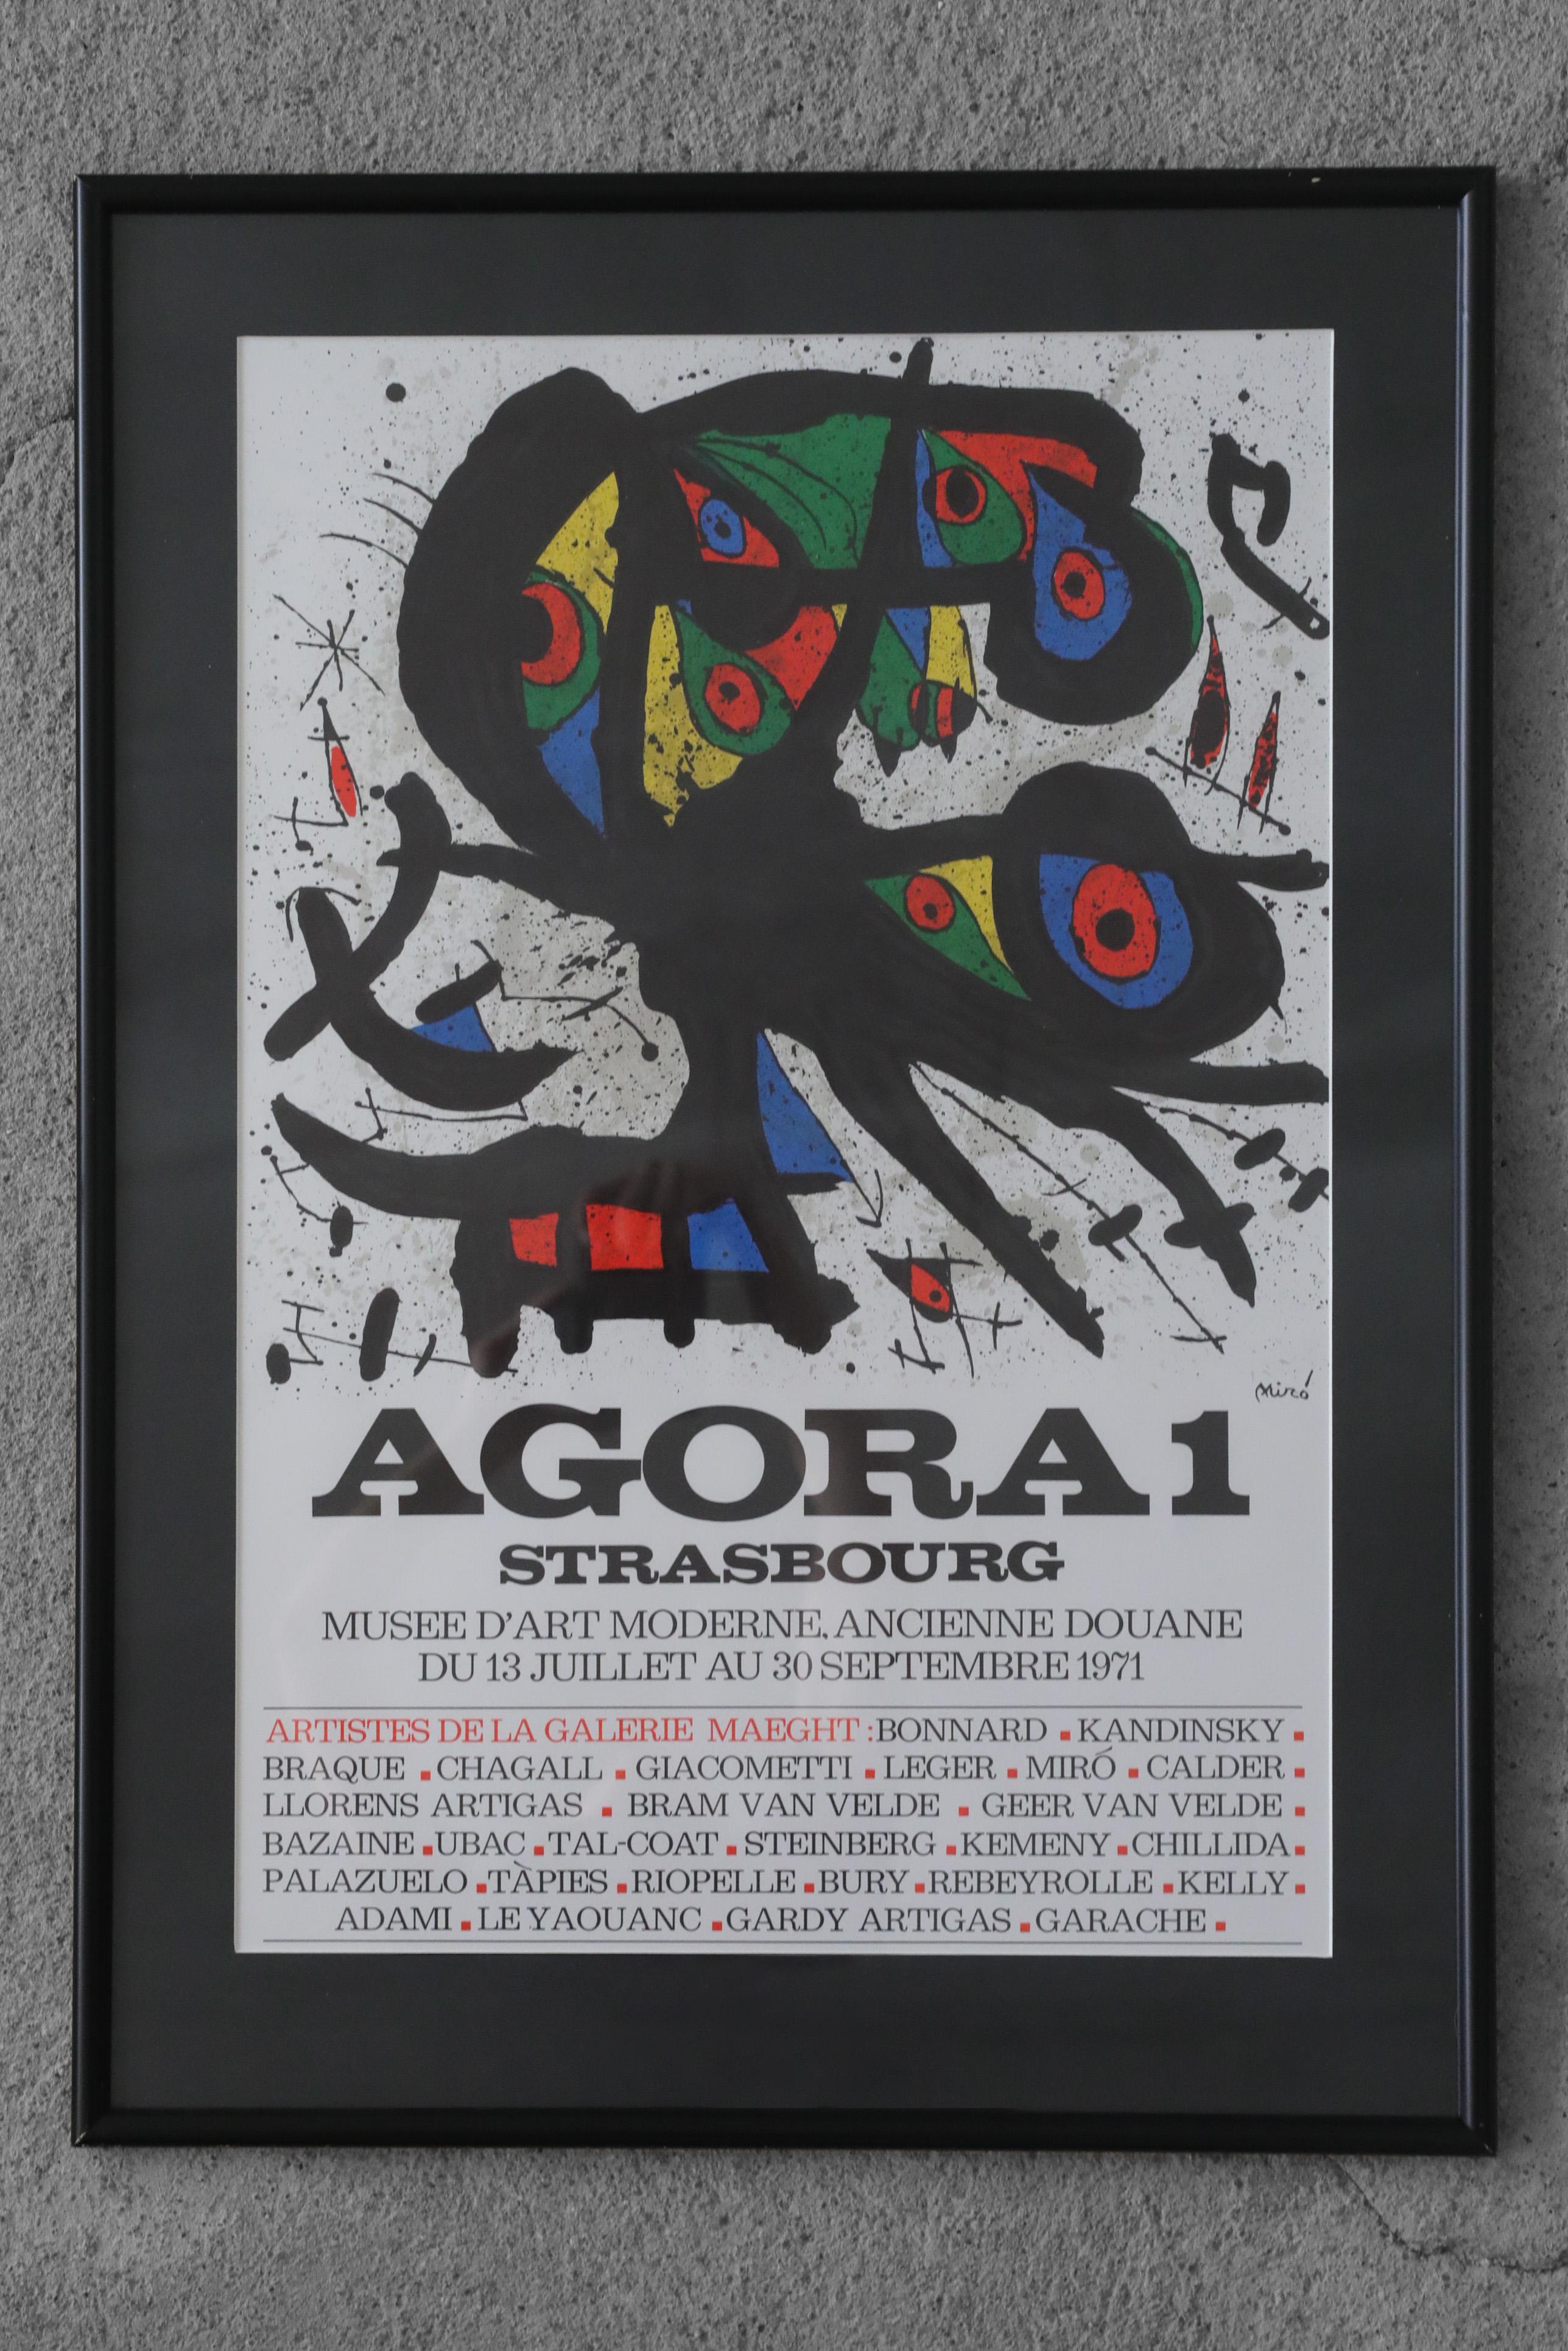 Joan Miró, Agora I, 1971
Lithographie couleur
Œuvre signée par l'artiste
Dimensions de travail 71/51
Œuvre encadrée

Affiche lithographique pour une exposition d'artistes représentés par la Galeria Aght au Musée d'Art Moderne de Strasbourg en 1971.